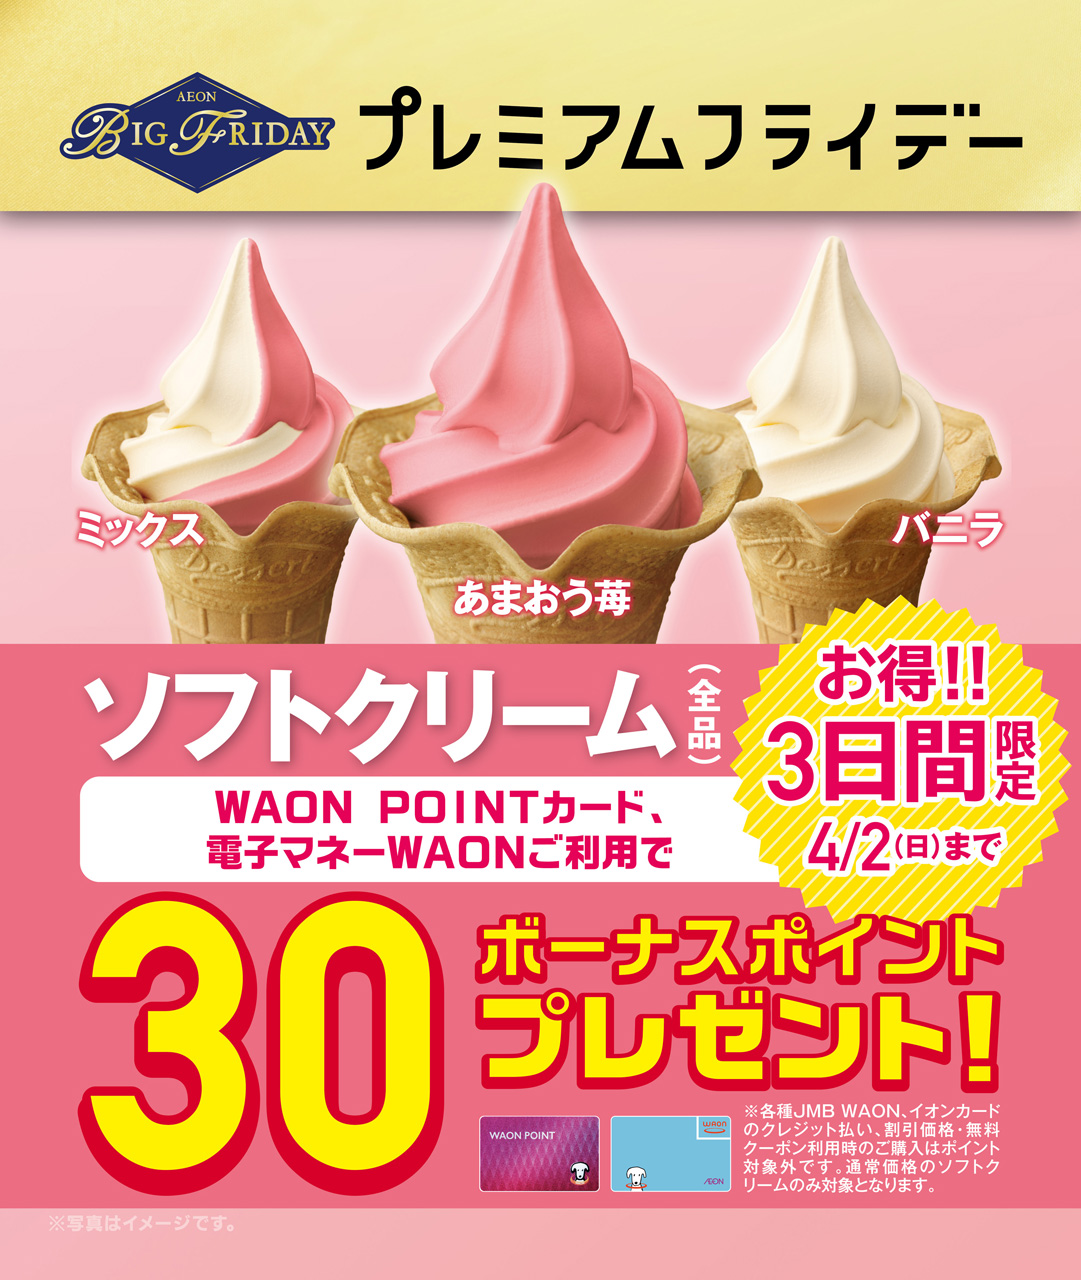 ソフトクリームを買うと30ボーナスポイントプレゼント。1ポイント＝1円で使えます